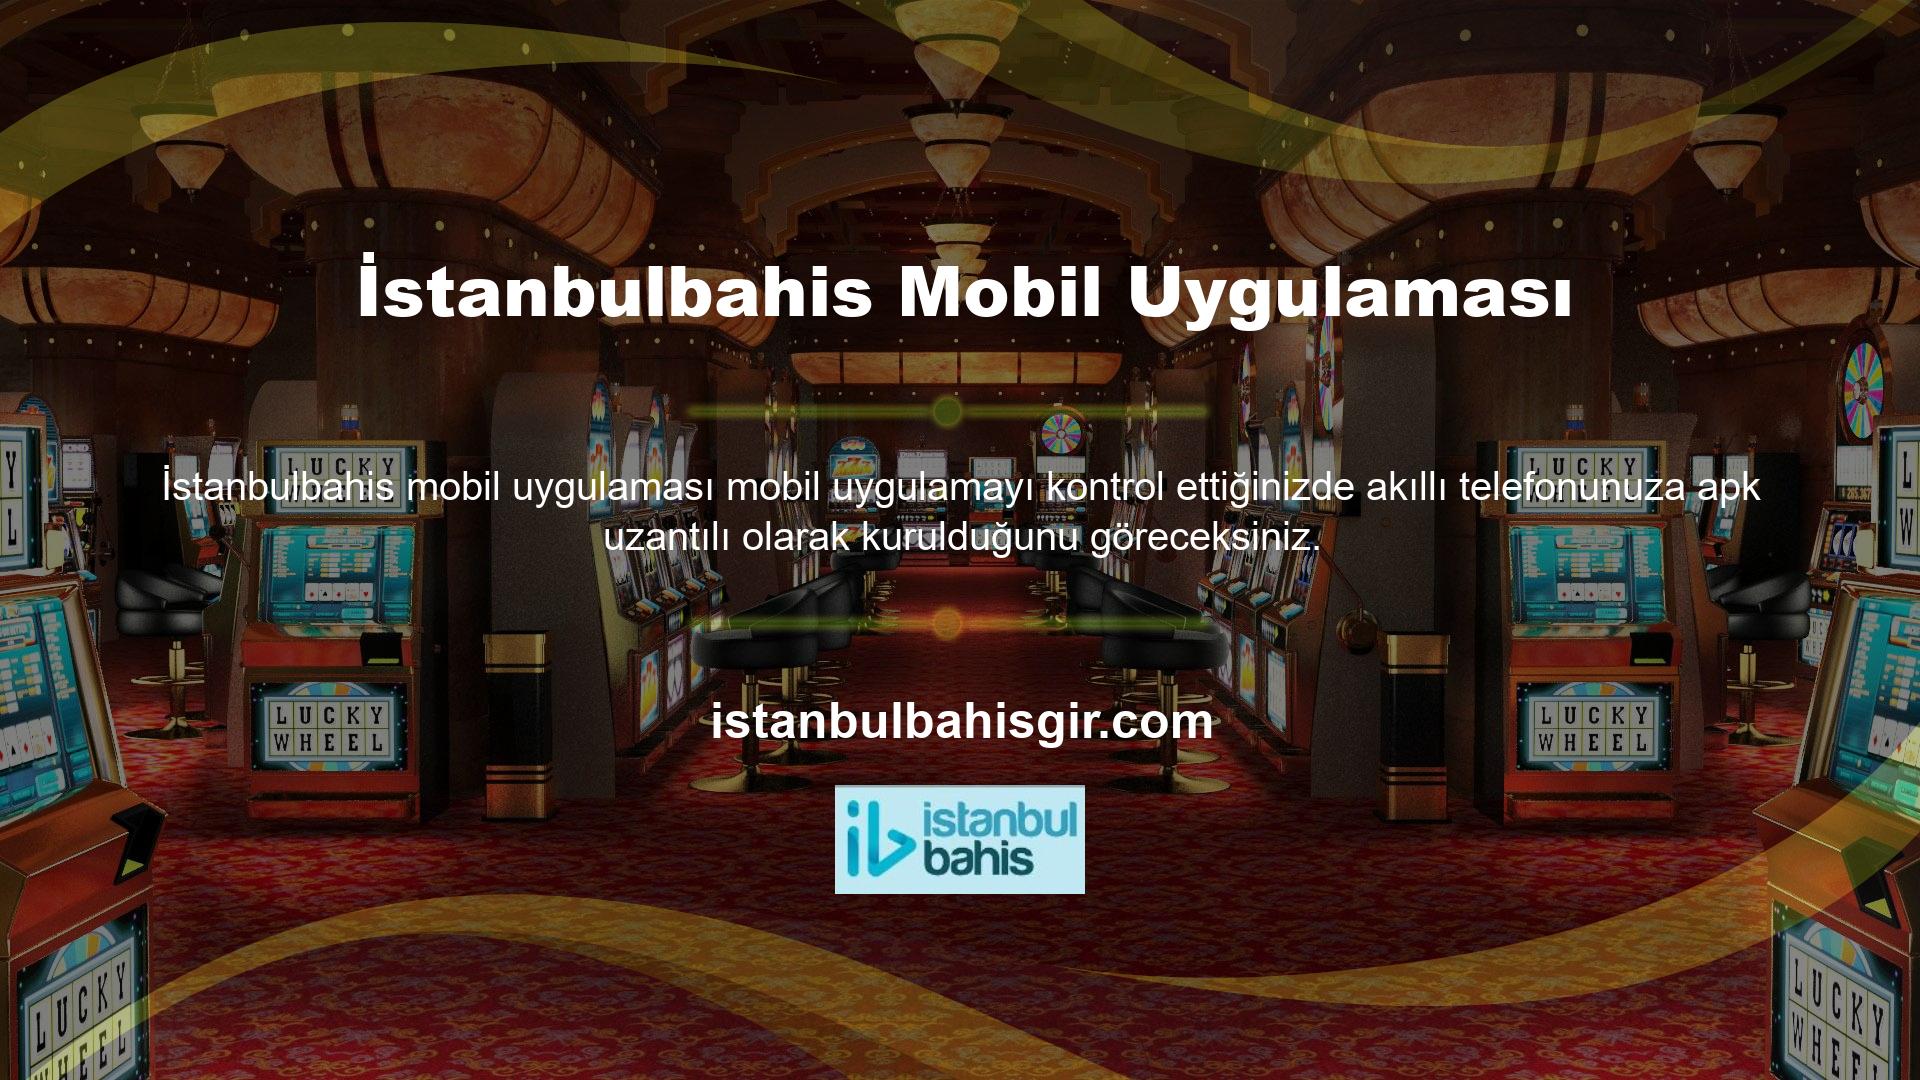 İstanbulbahis mobil uygulamasını cep telefonunuza güvenle indirebilirsiniz